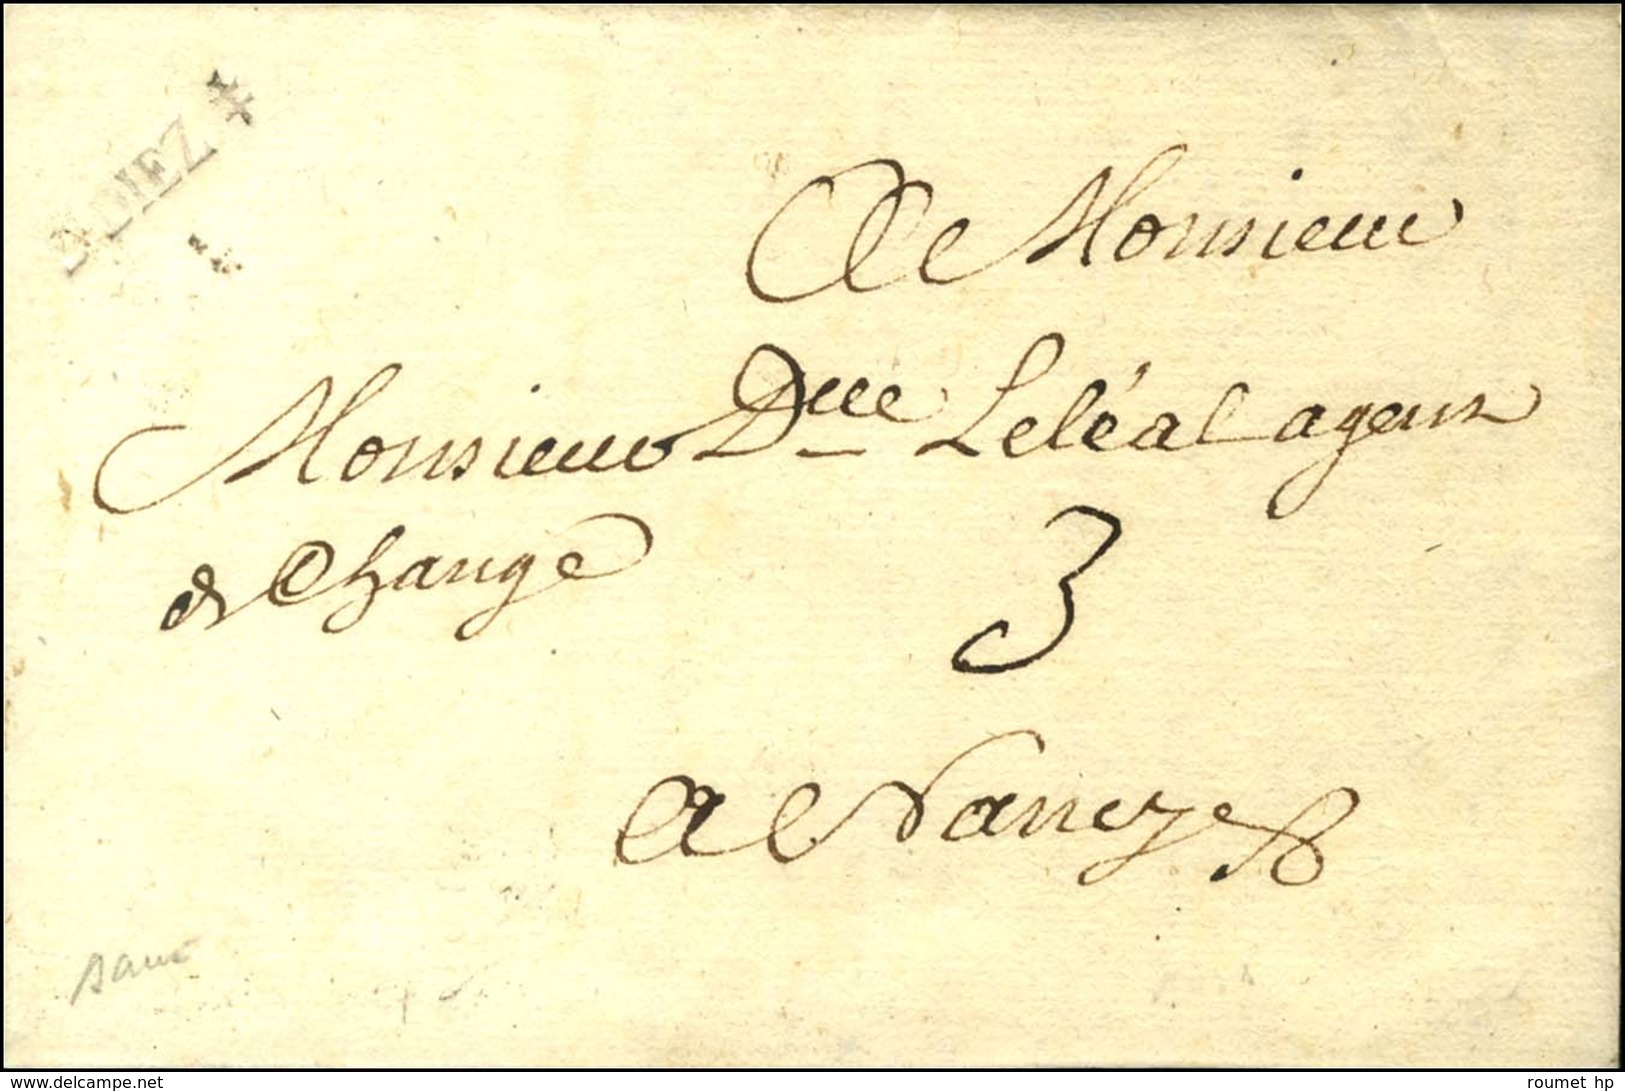 Marque Postale Ornée S. DIEZ (L  N° 1) Sur Lettre Avec Texte Daté Du 1er Mars 1758 Pour Nancy. - TB / SUP. - R. - 1701-1800: Precursors XVIII